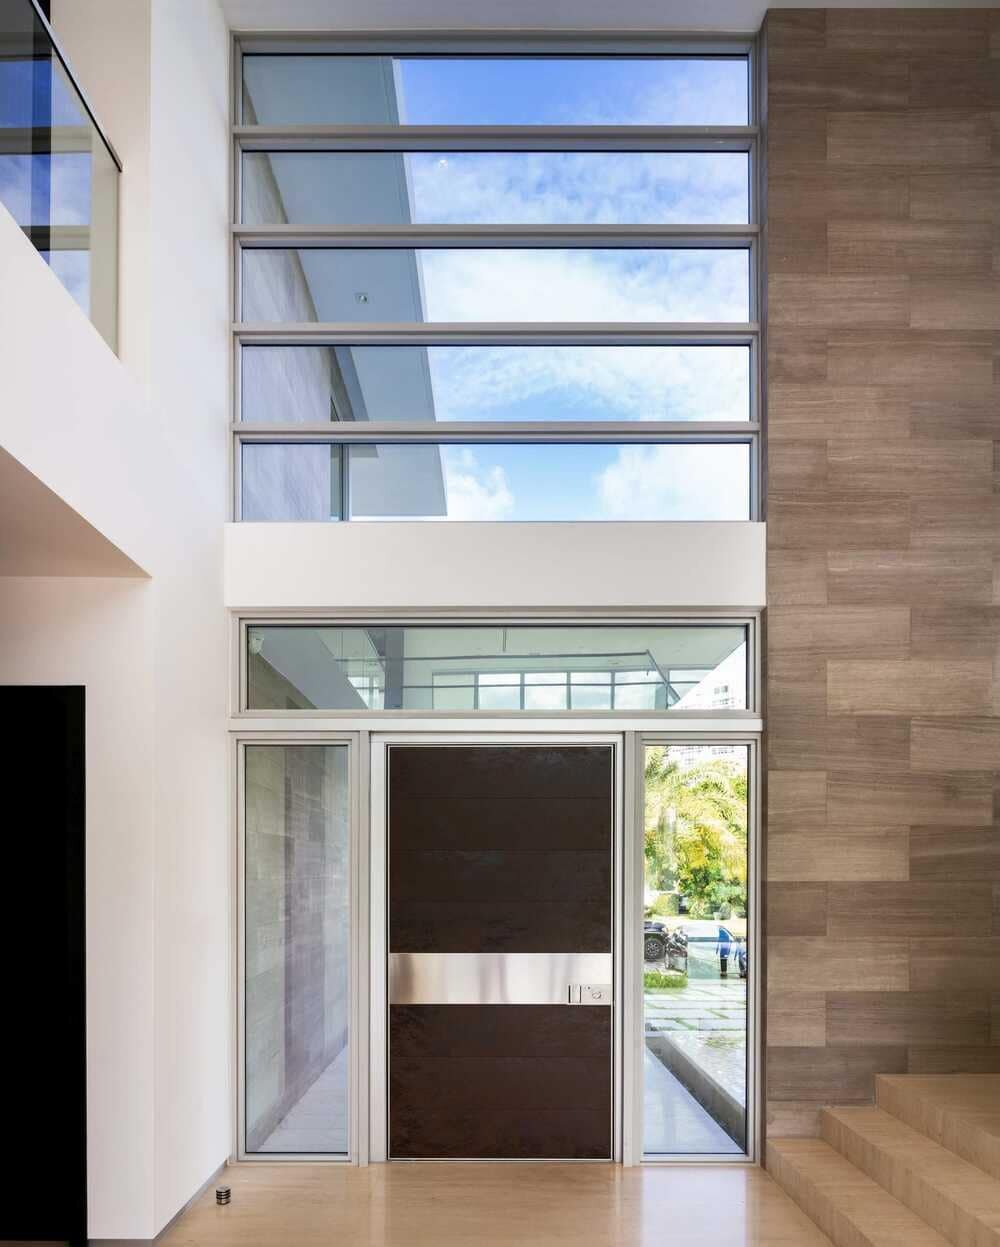 SDH Studio Architecture Firm in Miami Designs 301 Residence